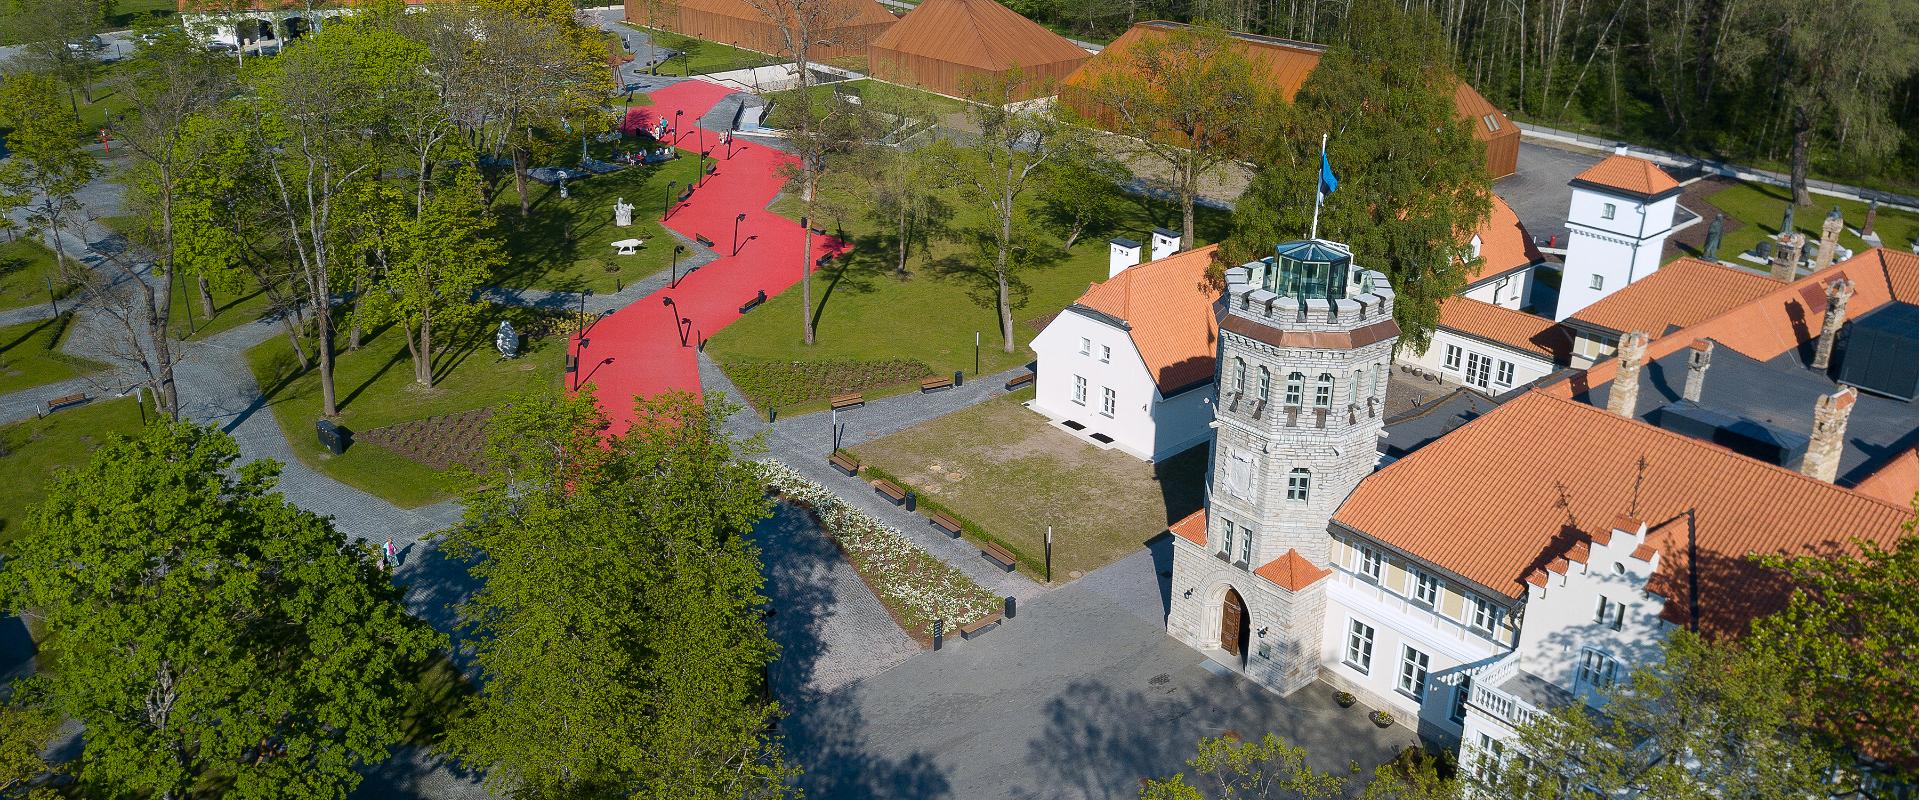 Viron historiallisen museon Maarjamäen linna